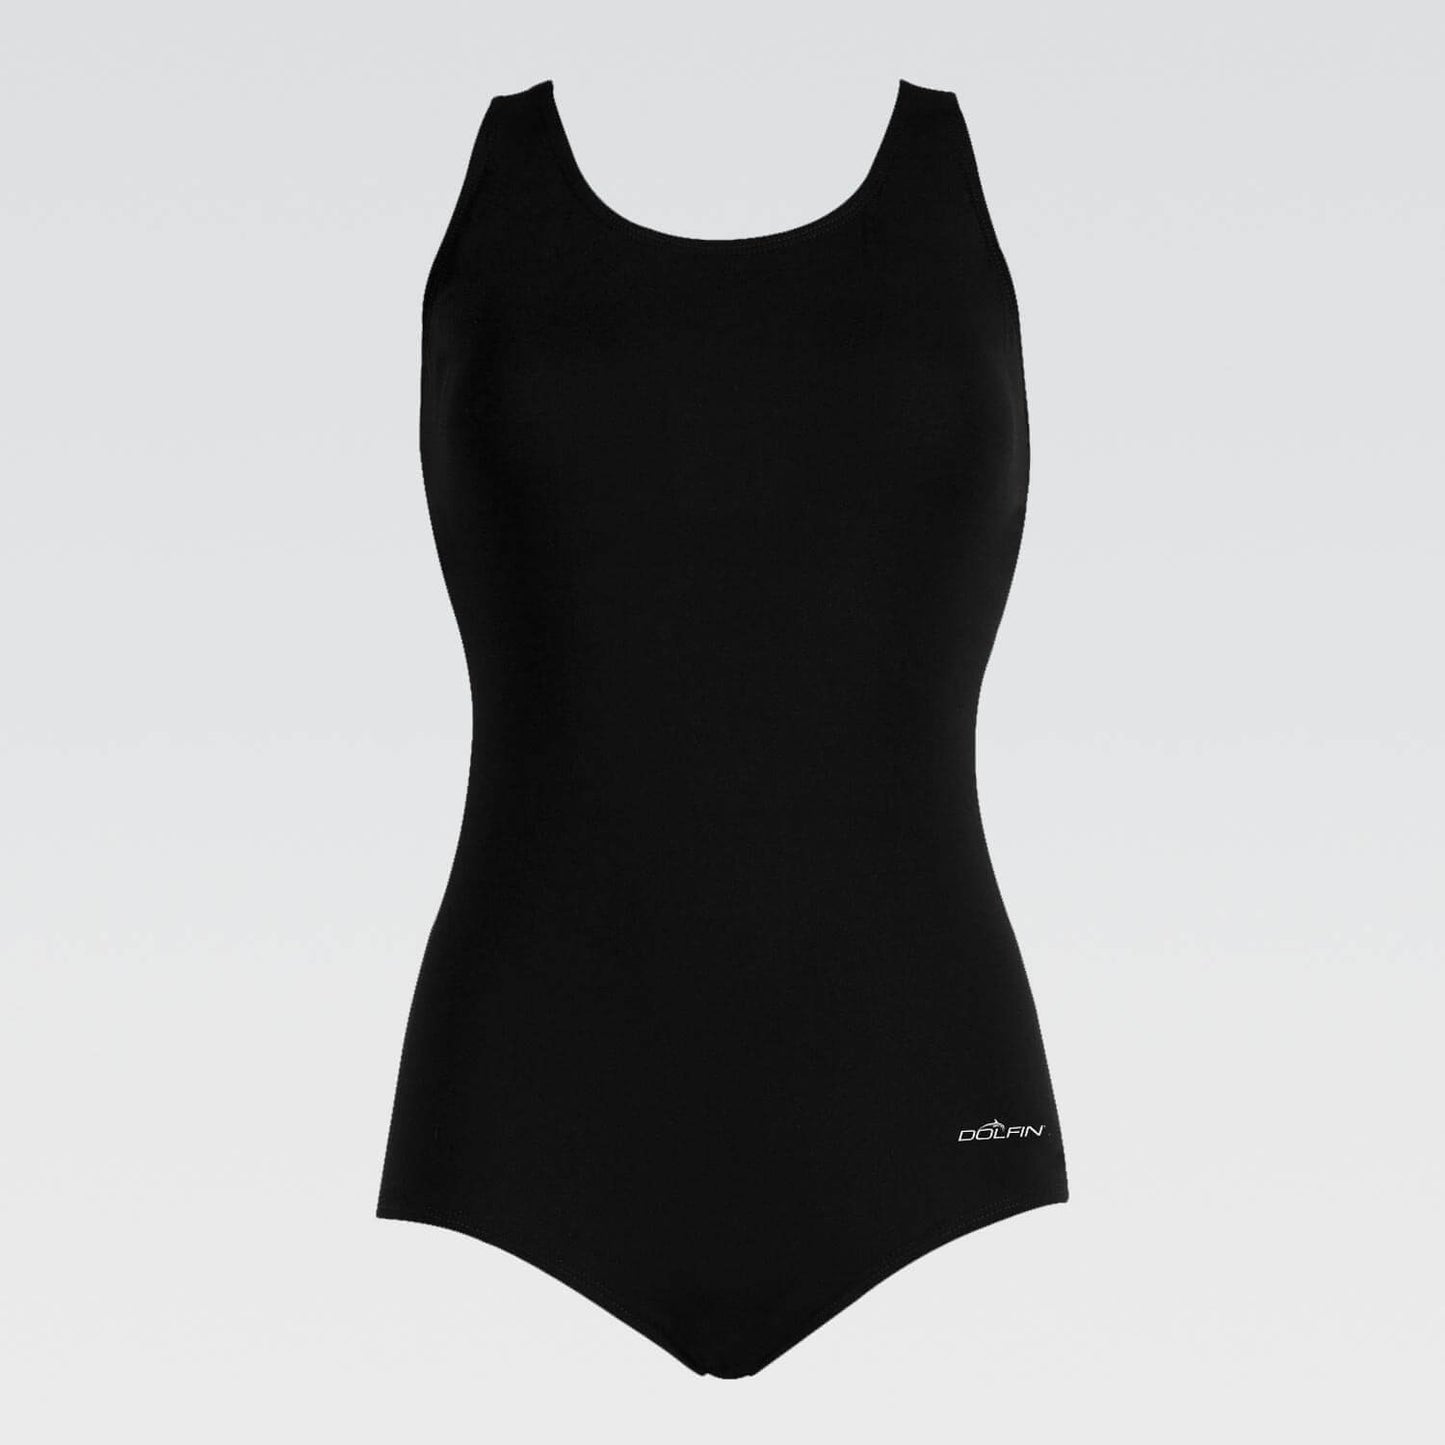 Aquashape Conservative Lap Suit 60553 - Black